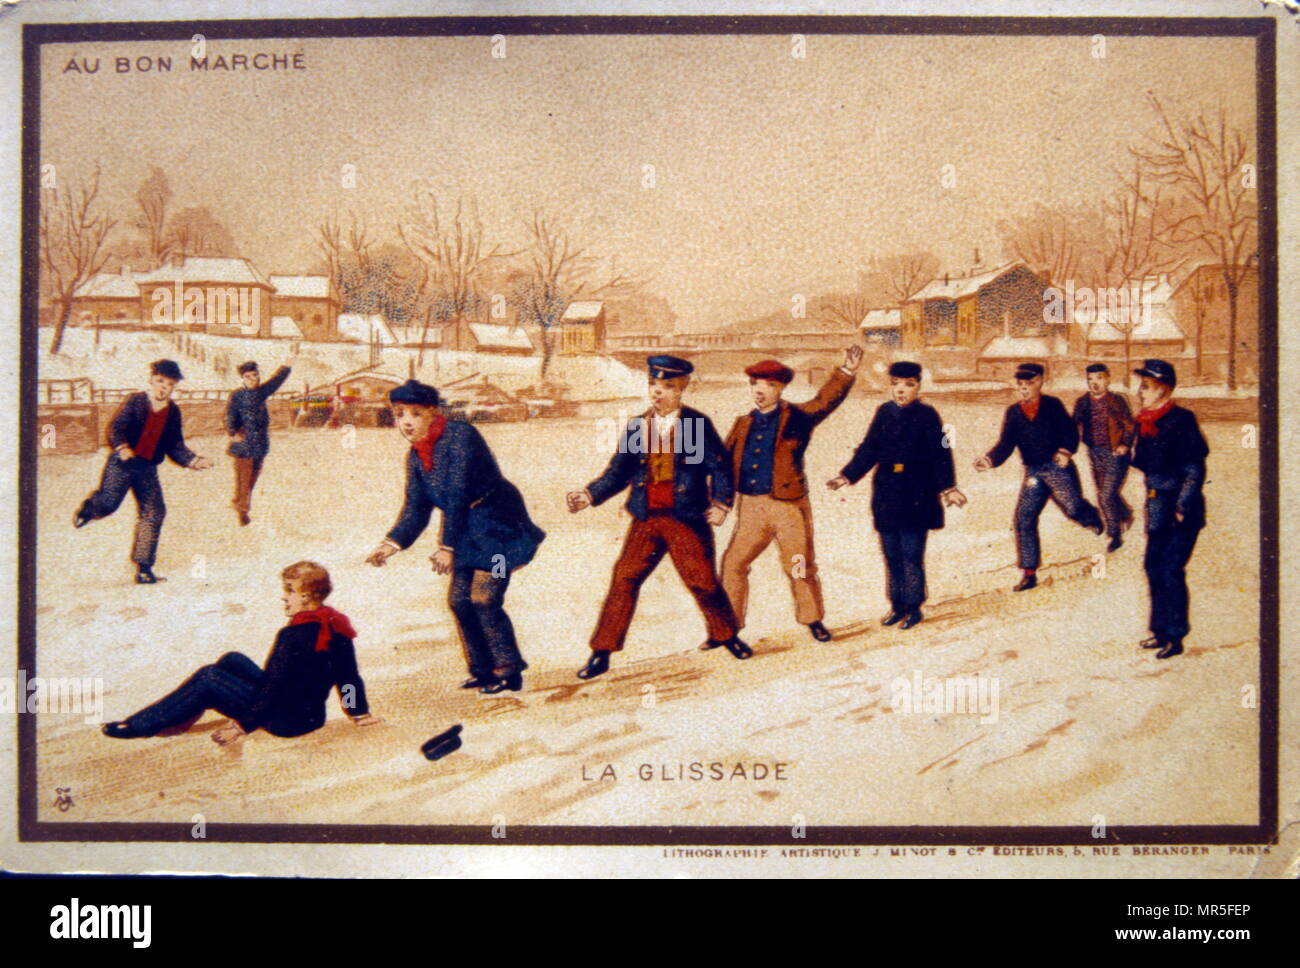 Carte postale montrant les garçons lançant des boules de neige pendant un festival de glace, France 1900 Banque D'Images